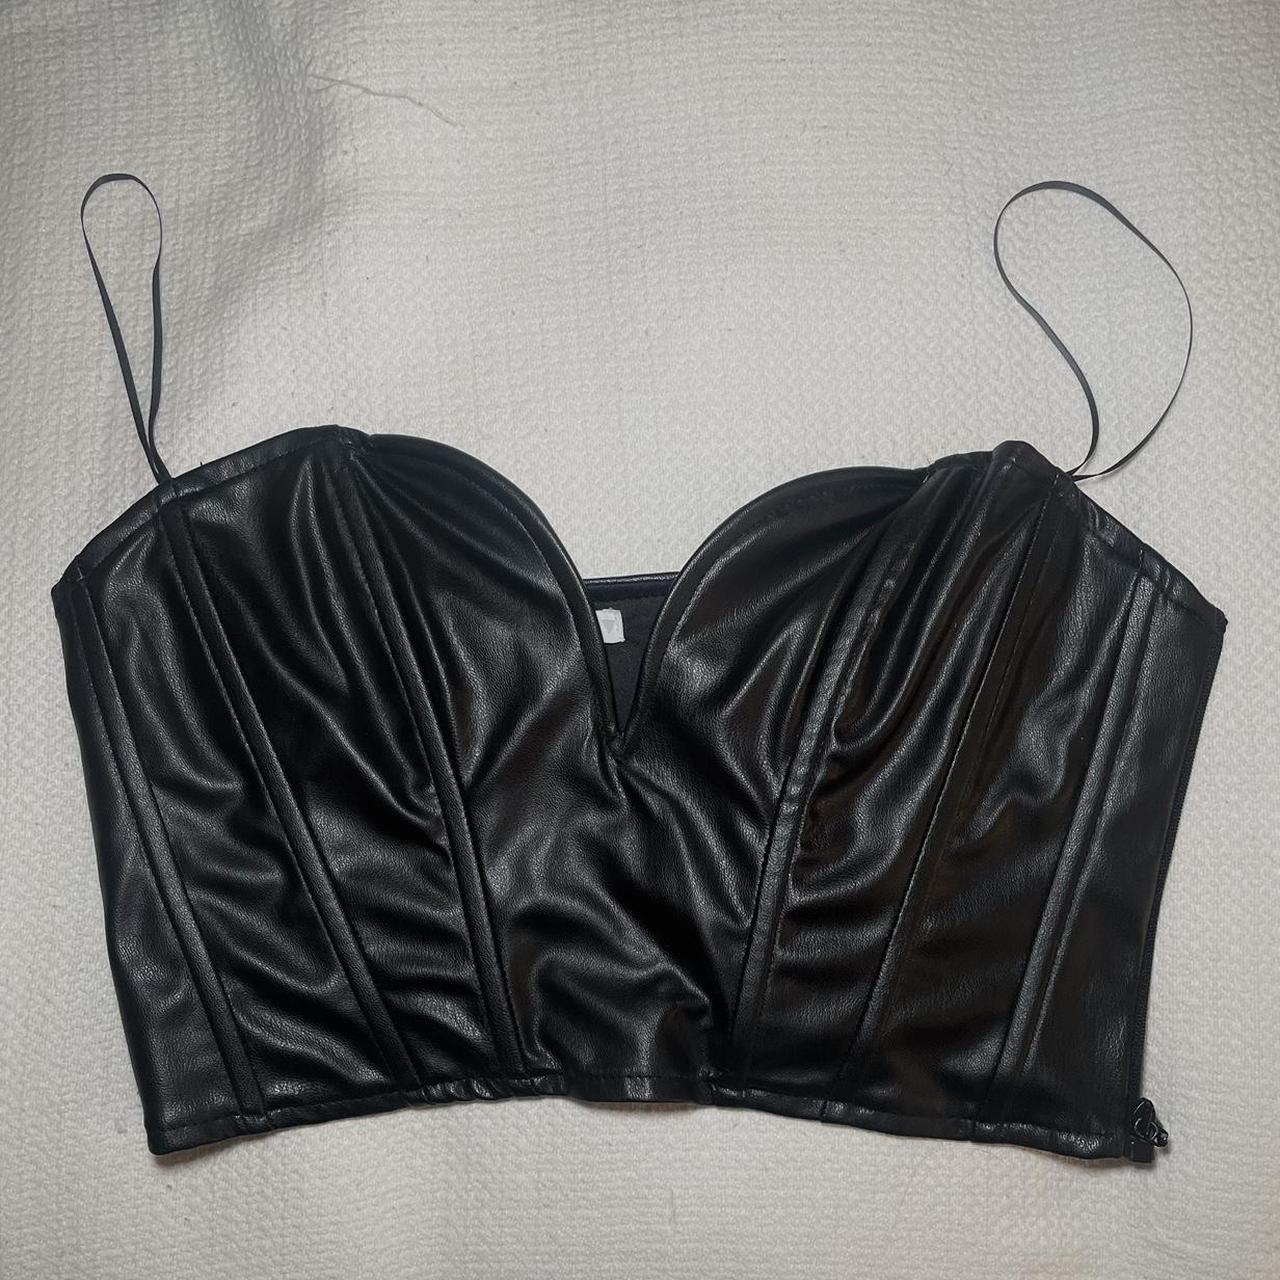 zara leather corset crop top, fits XS-M depending - Depop